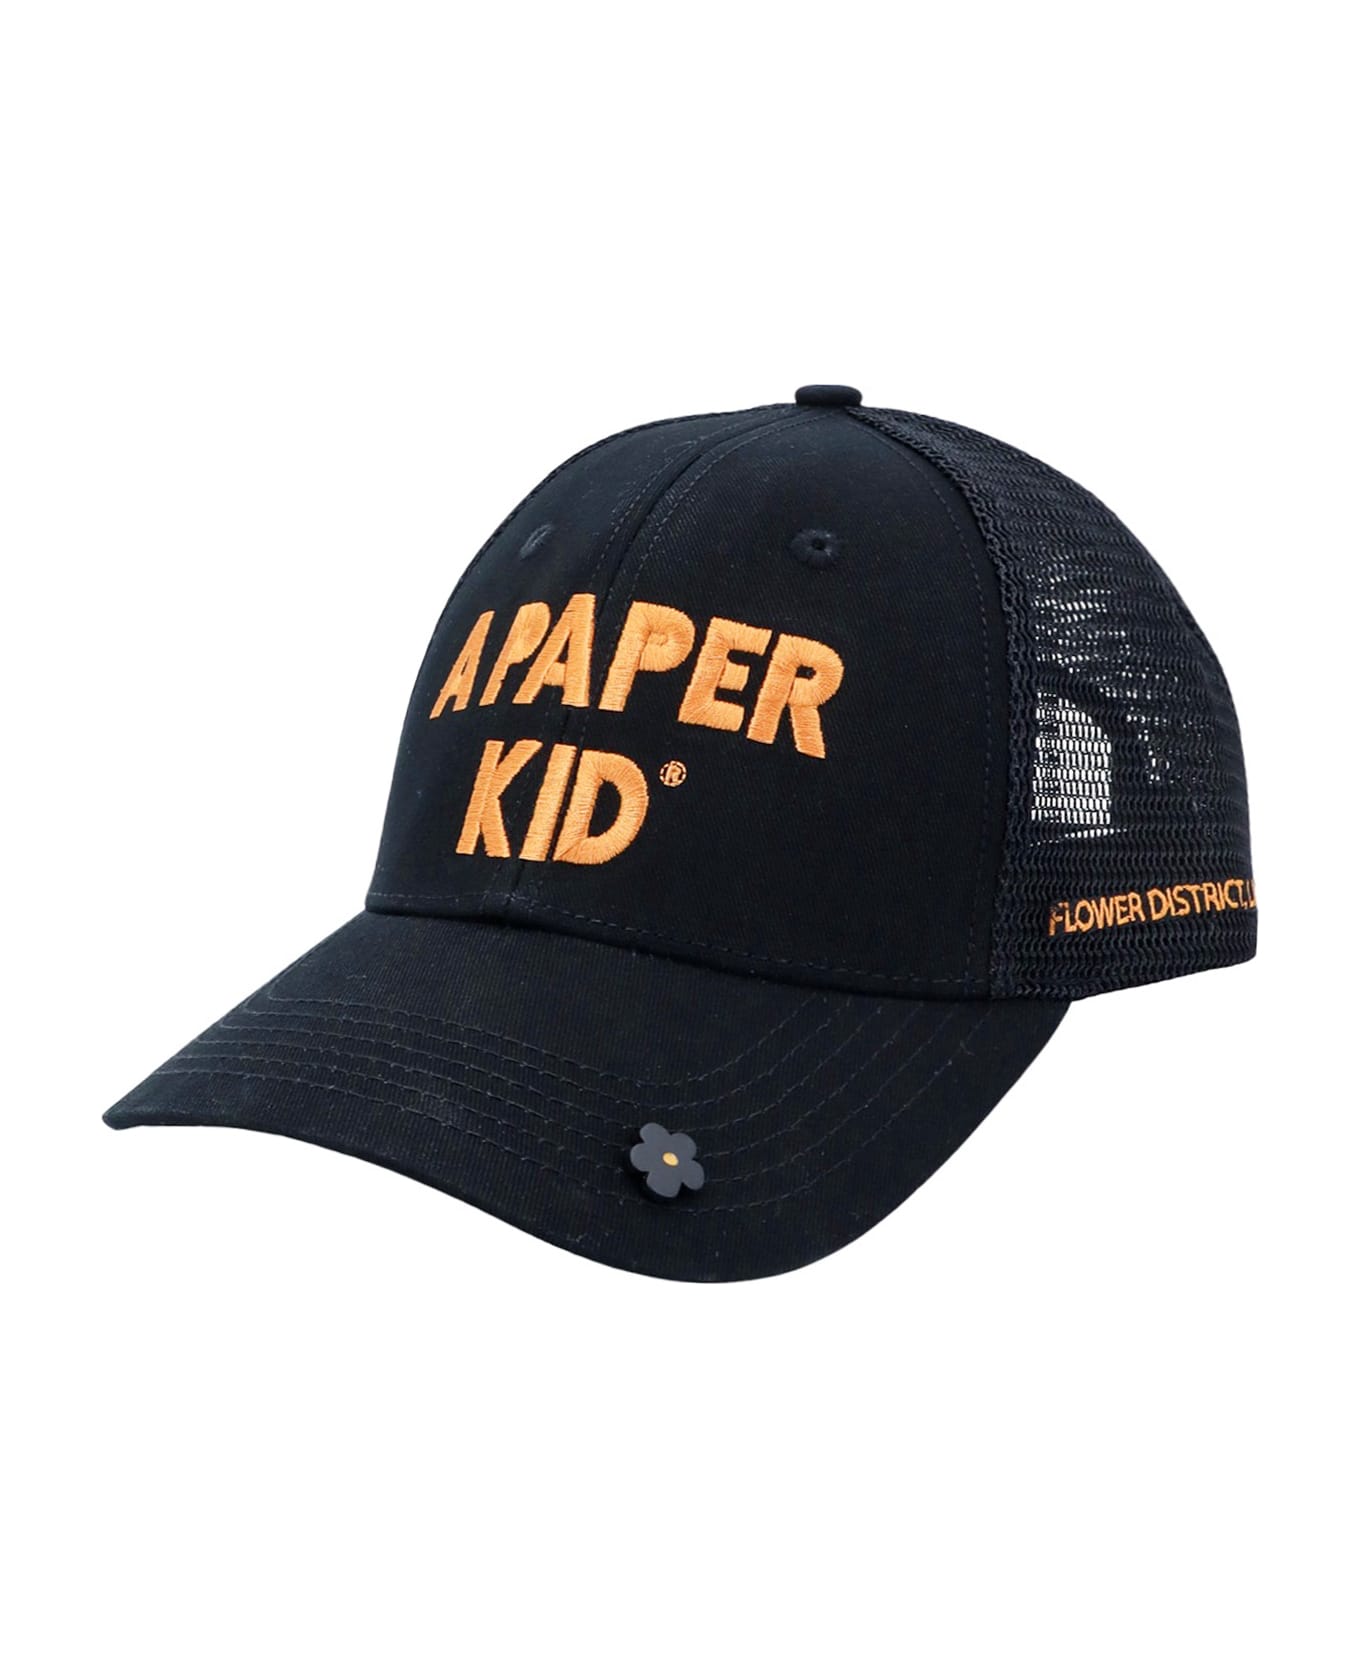 A Paper Kid Hat - Black 帽子